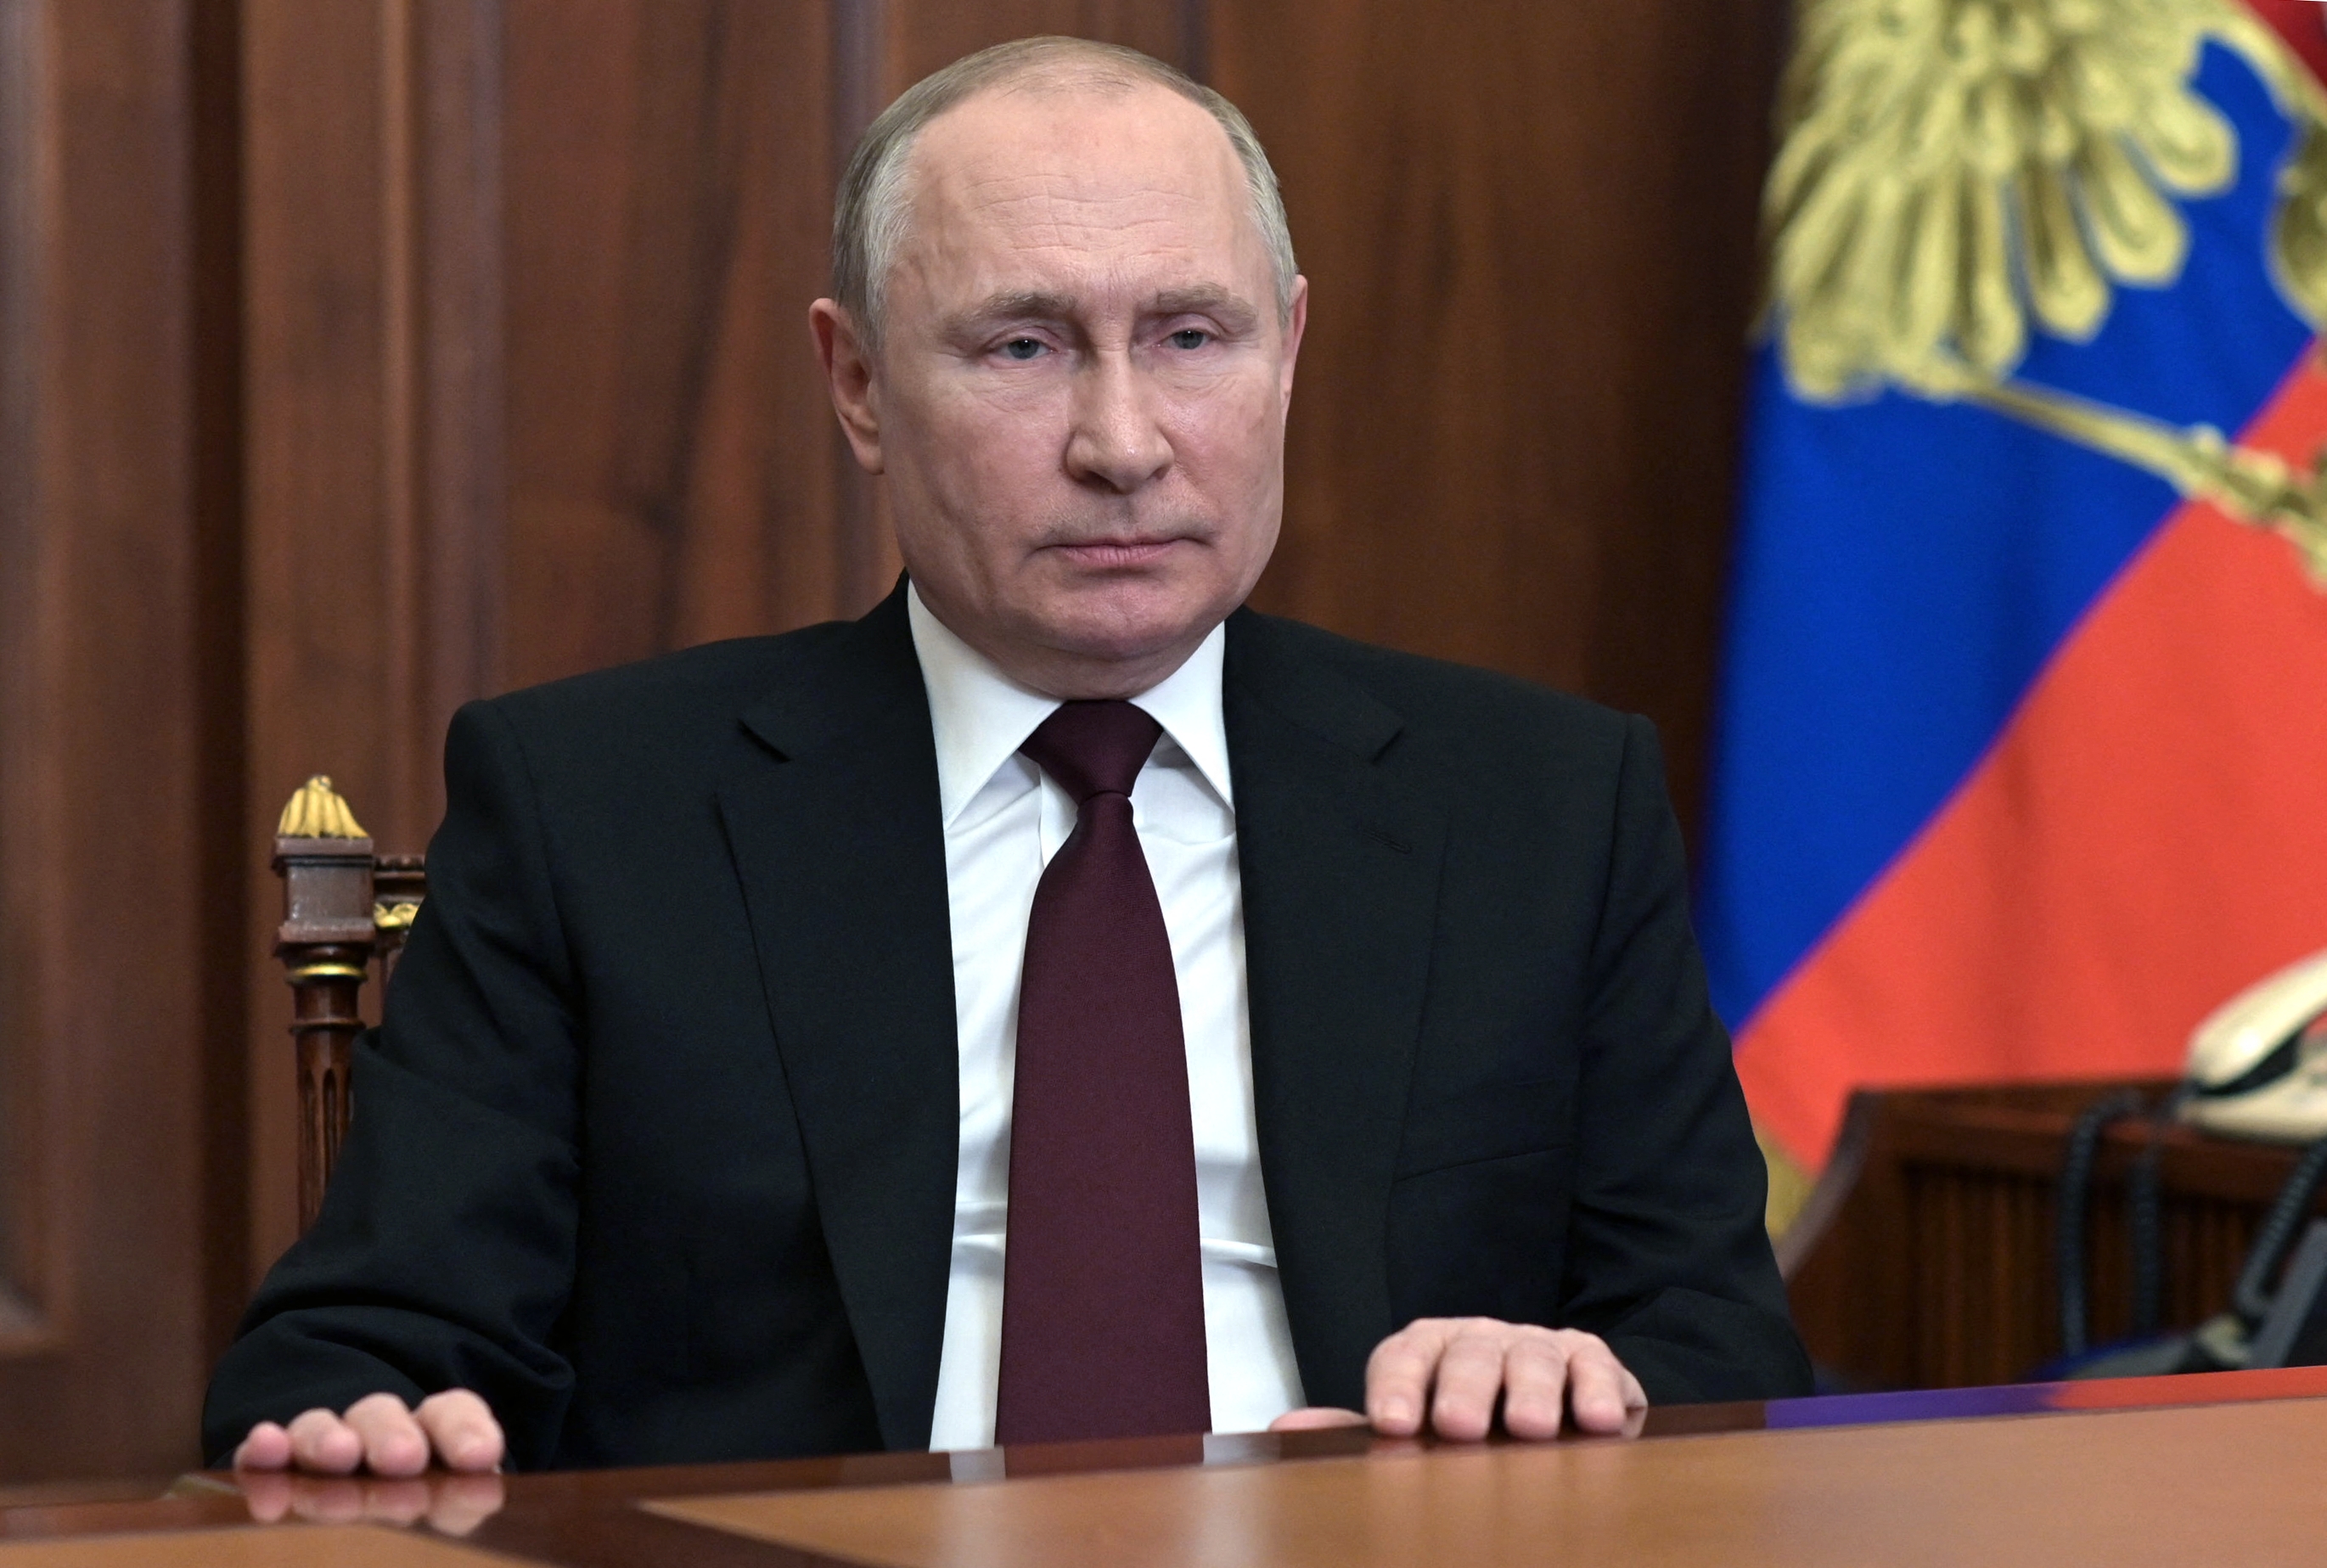 ONG verificador de “fake news” aseguró que Putin grabó el lunes #21Feb el anuncio de guerra